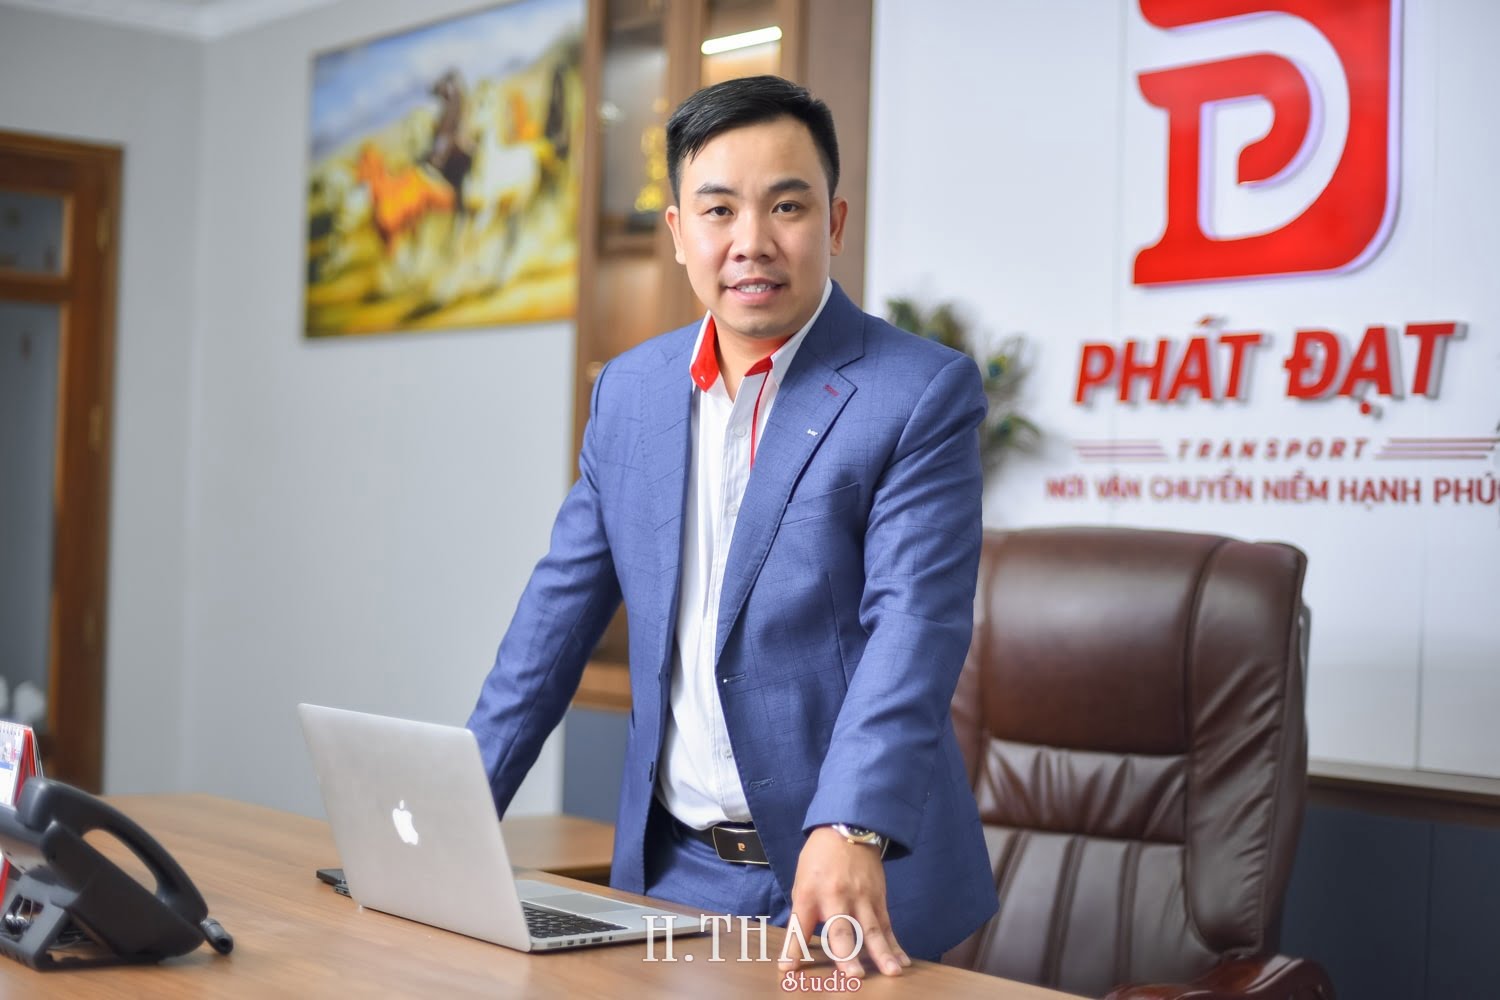 Anh doanh nhan nam 1 min - 3 kiểu chụp ảnh chân dung lãnh đạo đẹp, chuyên nghiệp nhất - HThao Studio